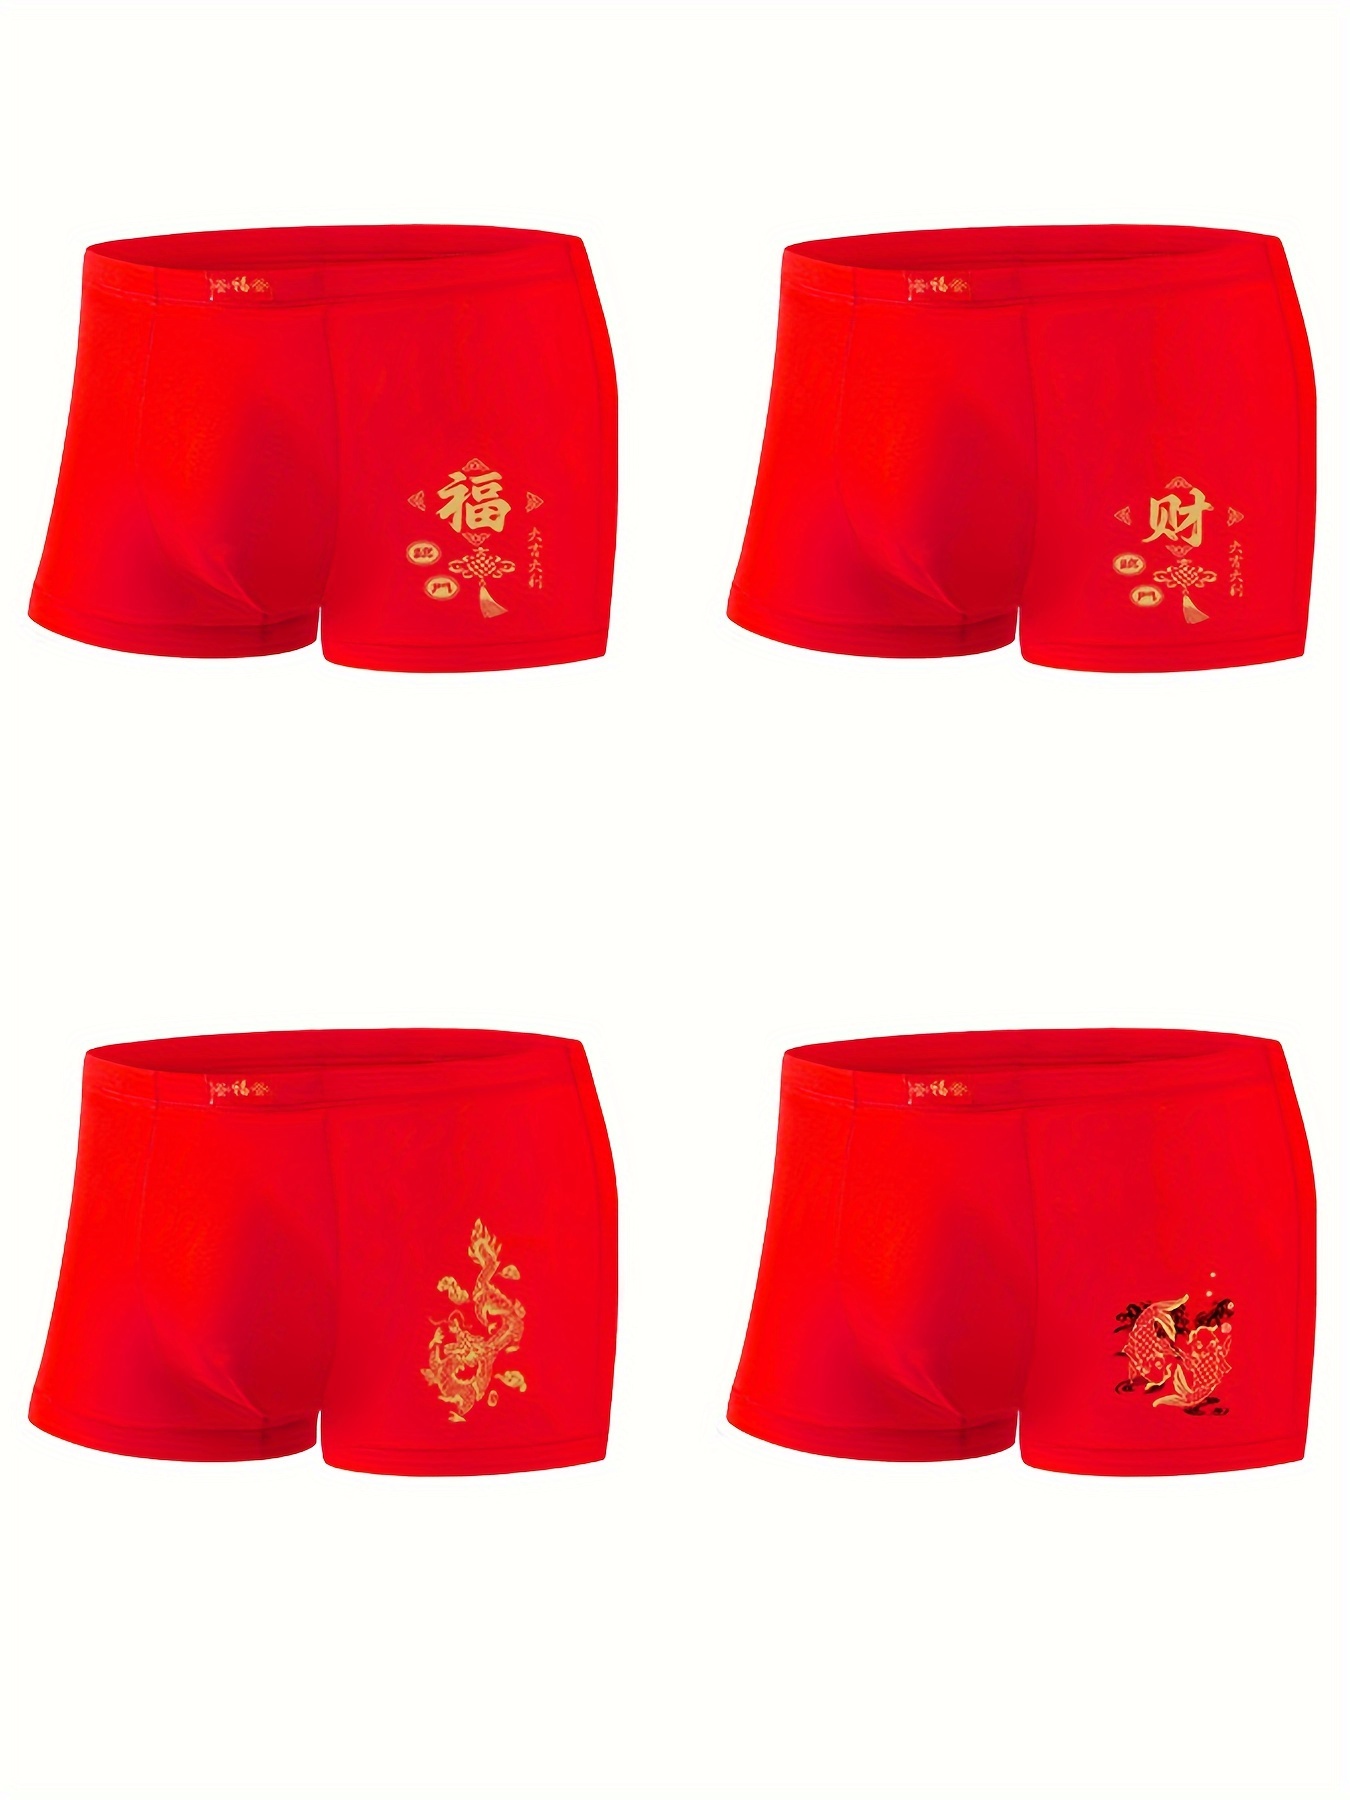 1117# Men's Underwear Boxer Briefs, Quick Dry Sports Underwear, Wine Red